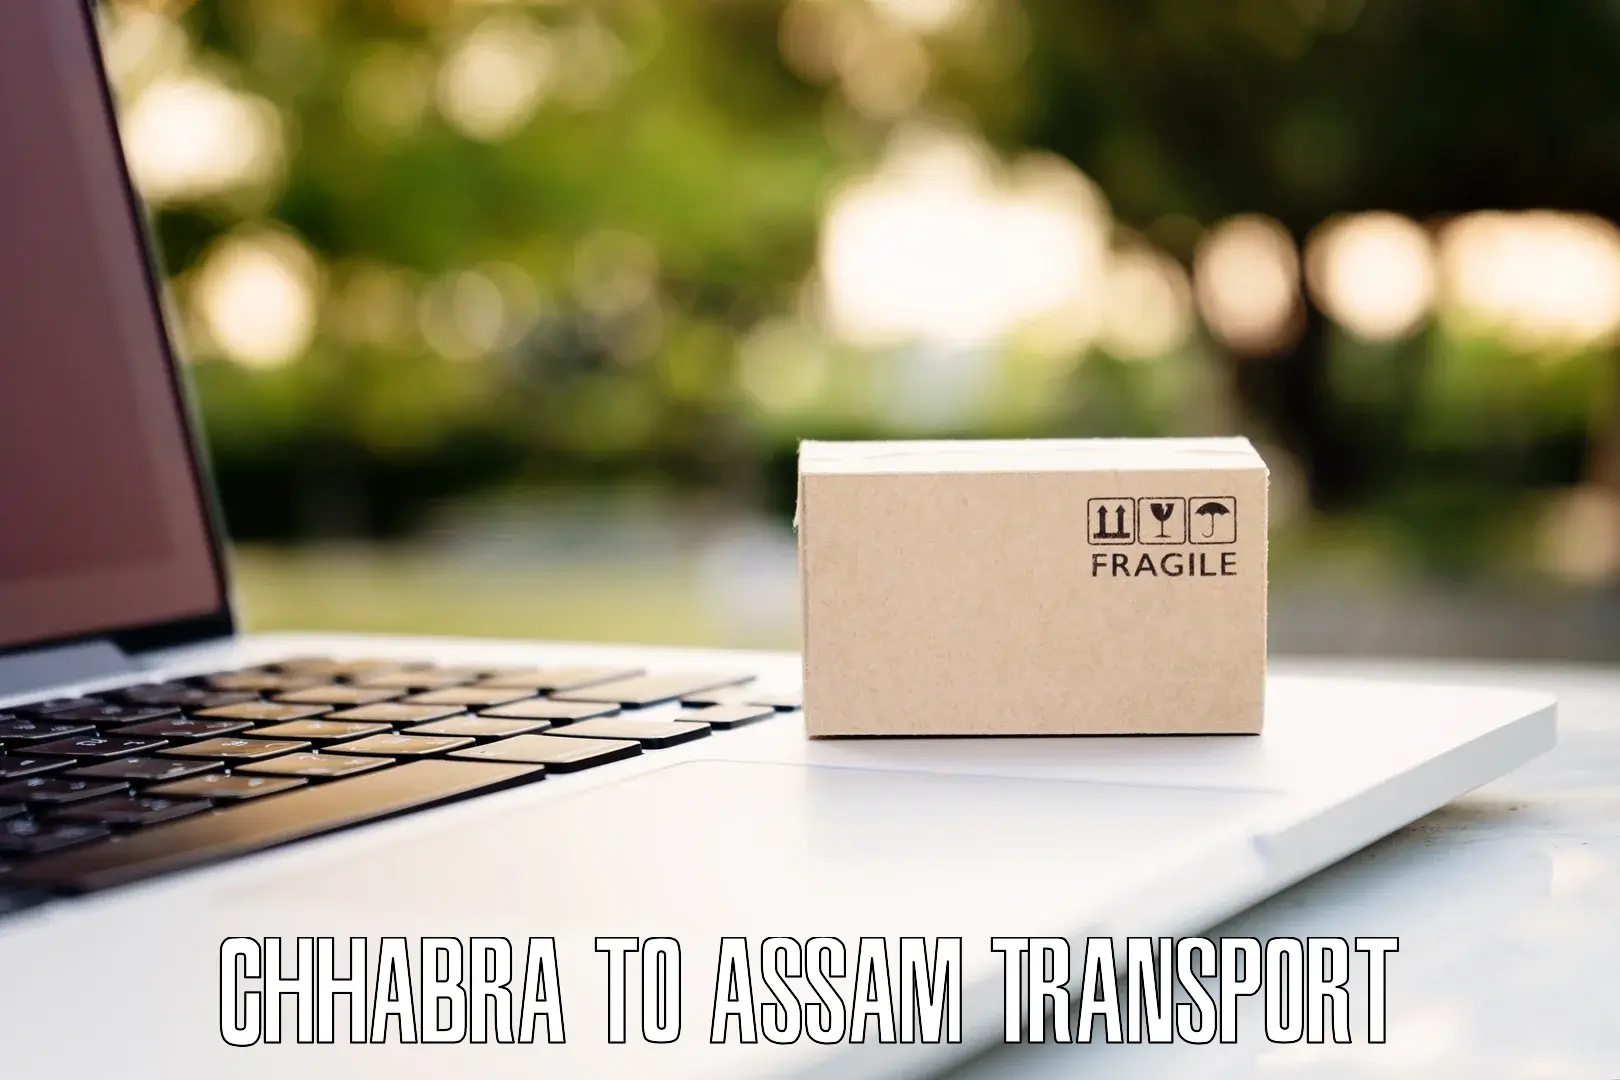 Furniture transport service Chhabra to Nagaon